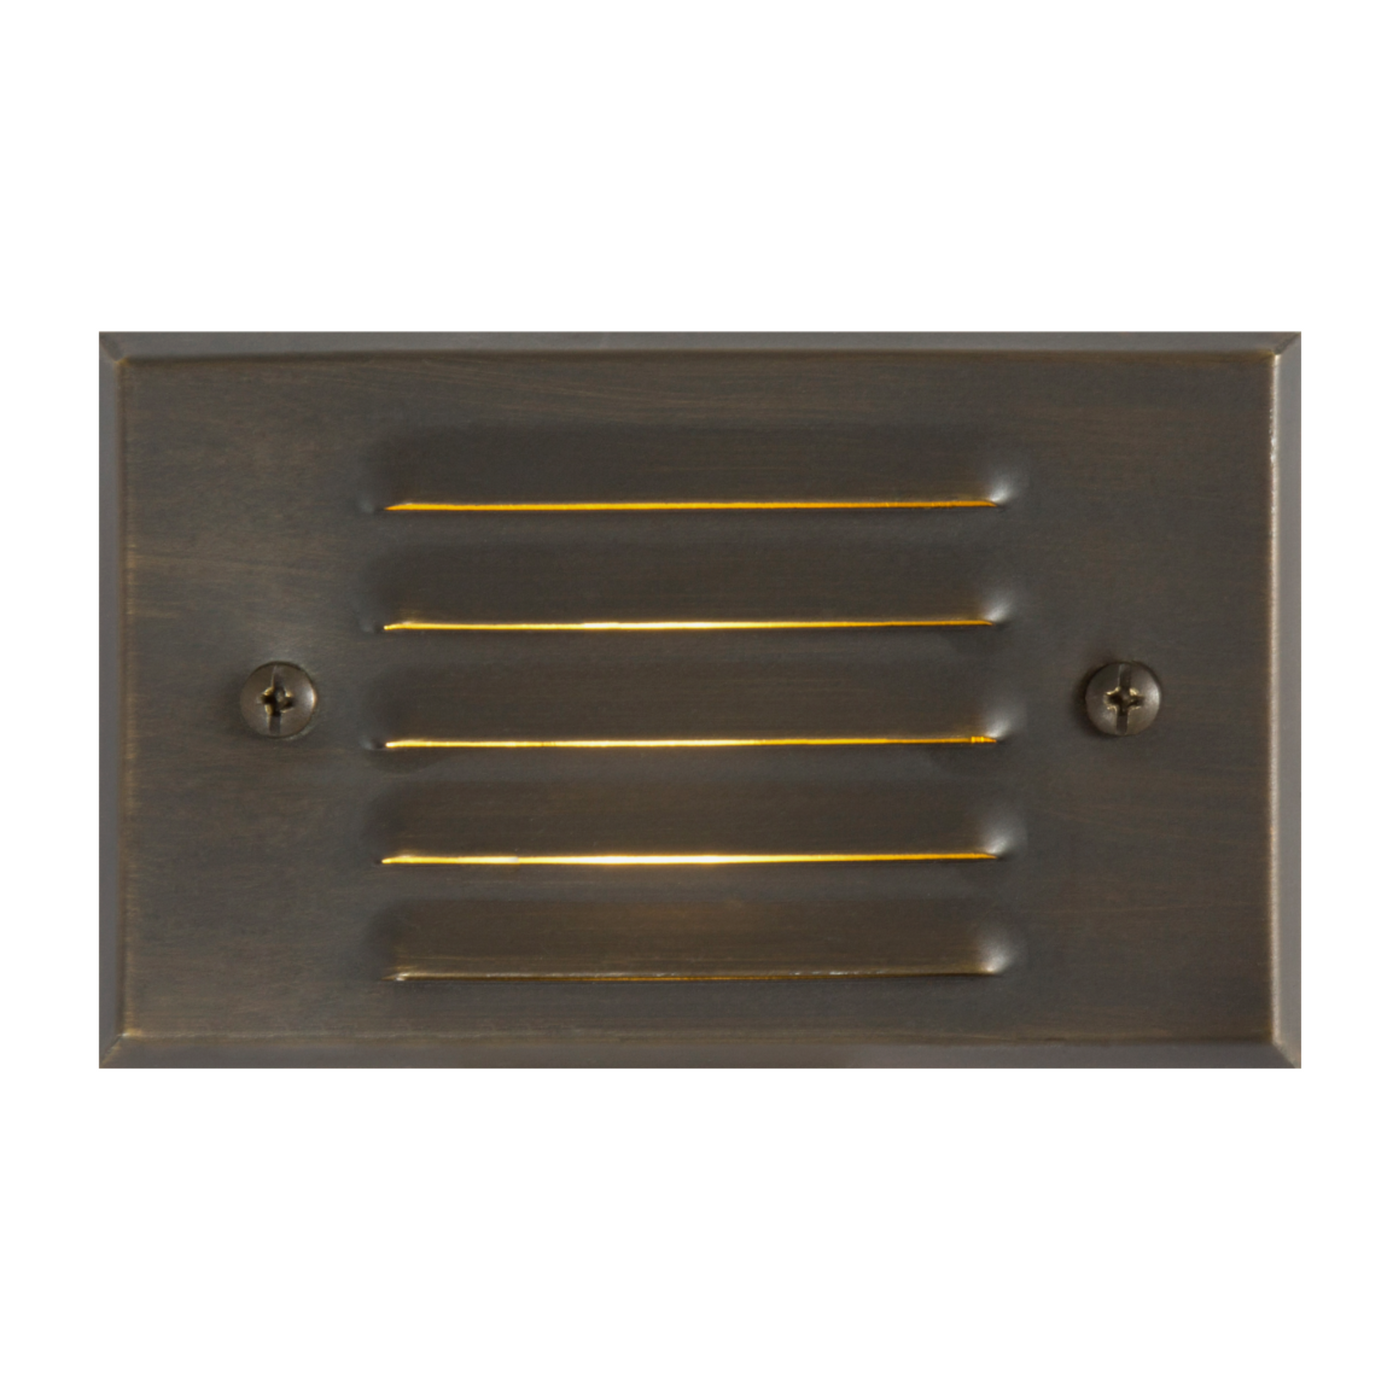 Top-Notch™ Classic Brass Step & Deck Light (Bronze) L4.88"Wx2.5"Hx3" - Top Notch Landscape Lighting Top Notch Landscape Lighting